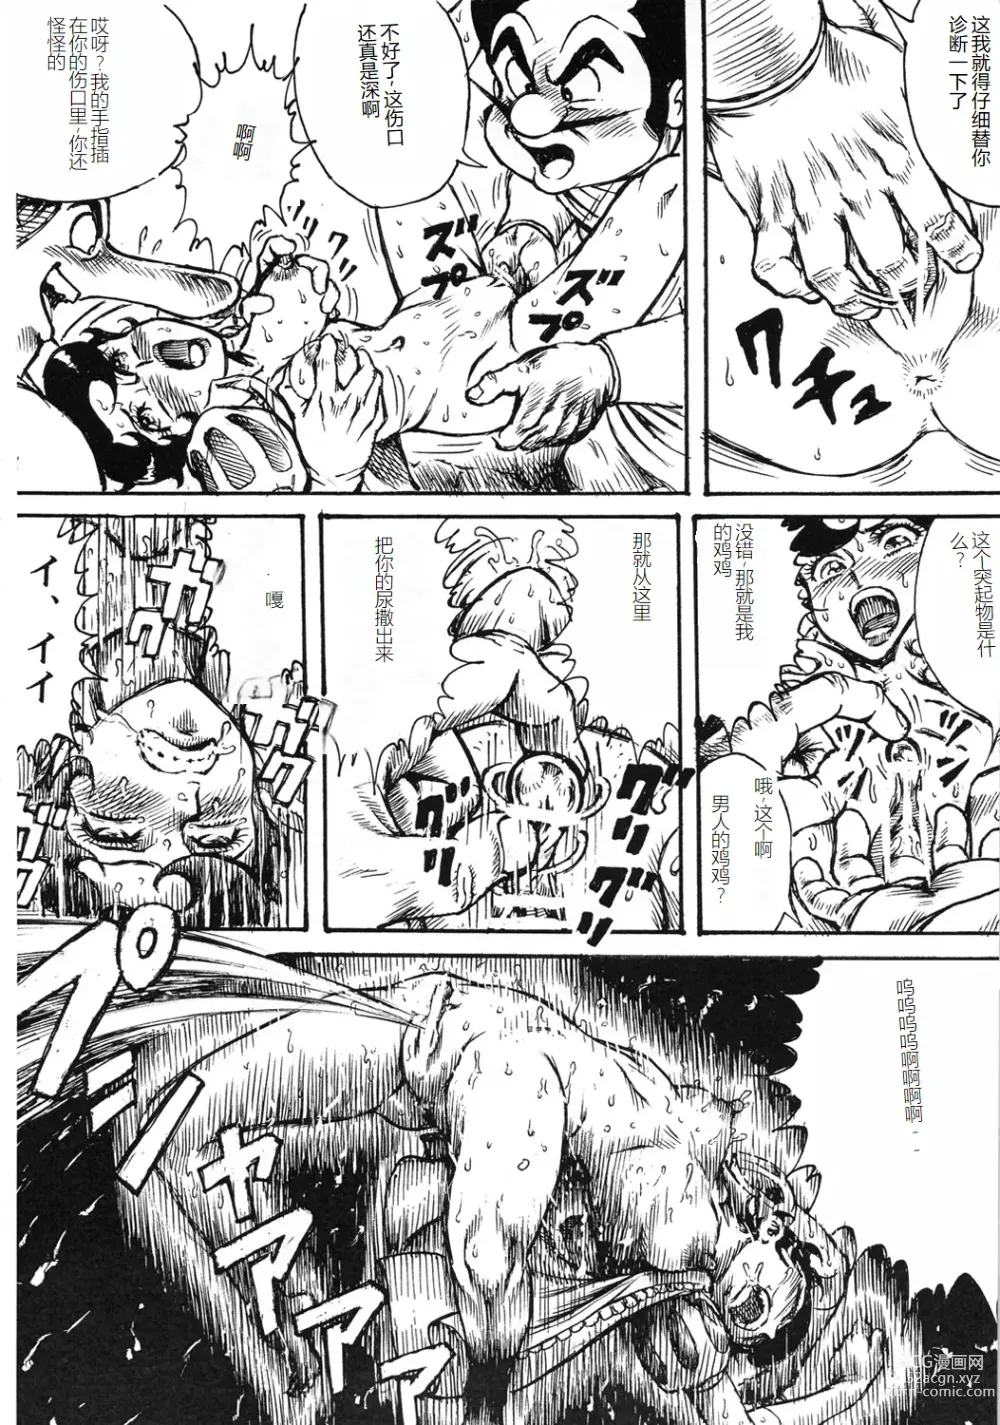 Page 27 of doujinshi Youjinbou Otaku Matsuri 8